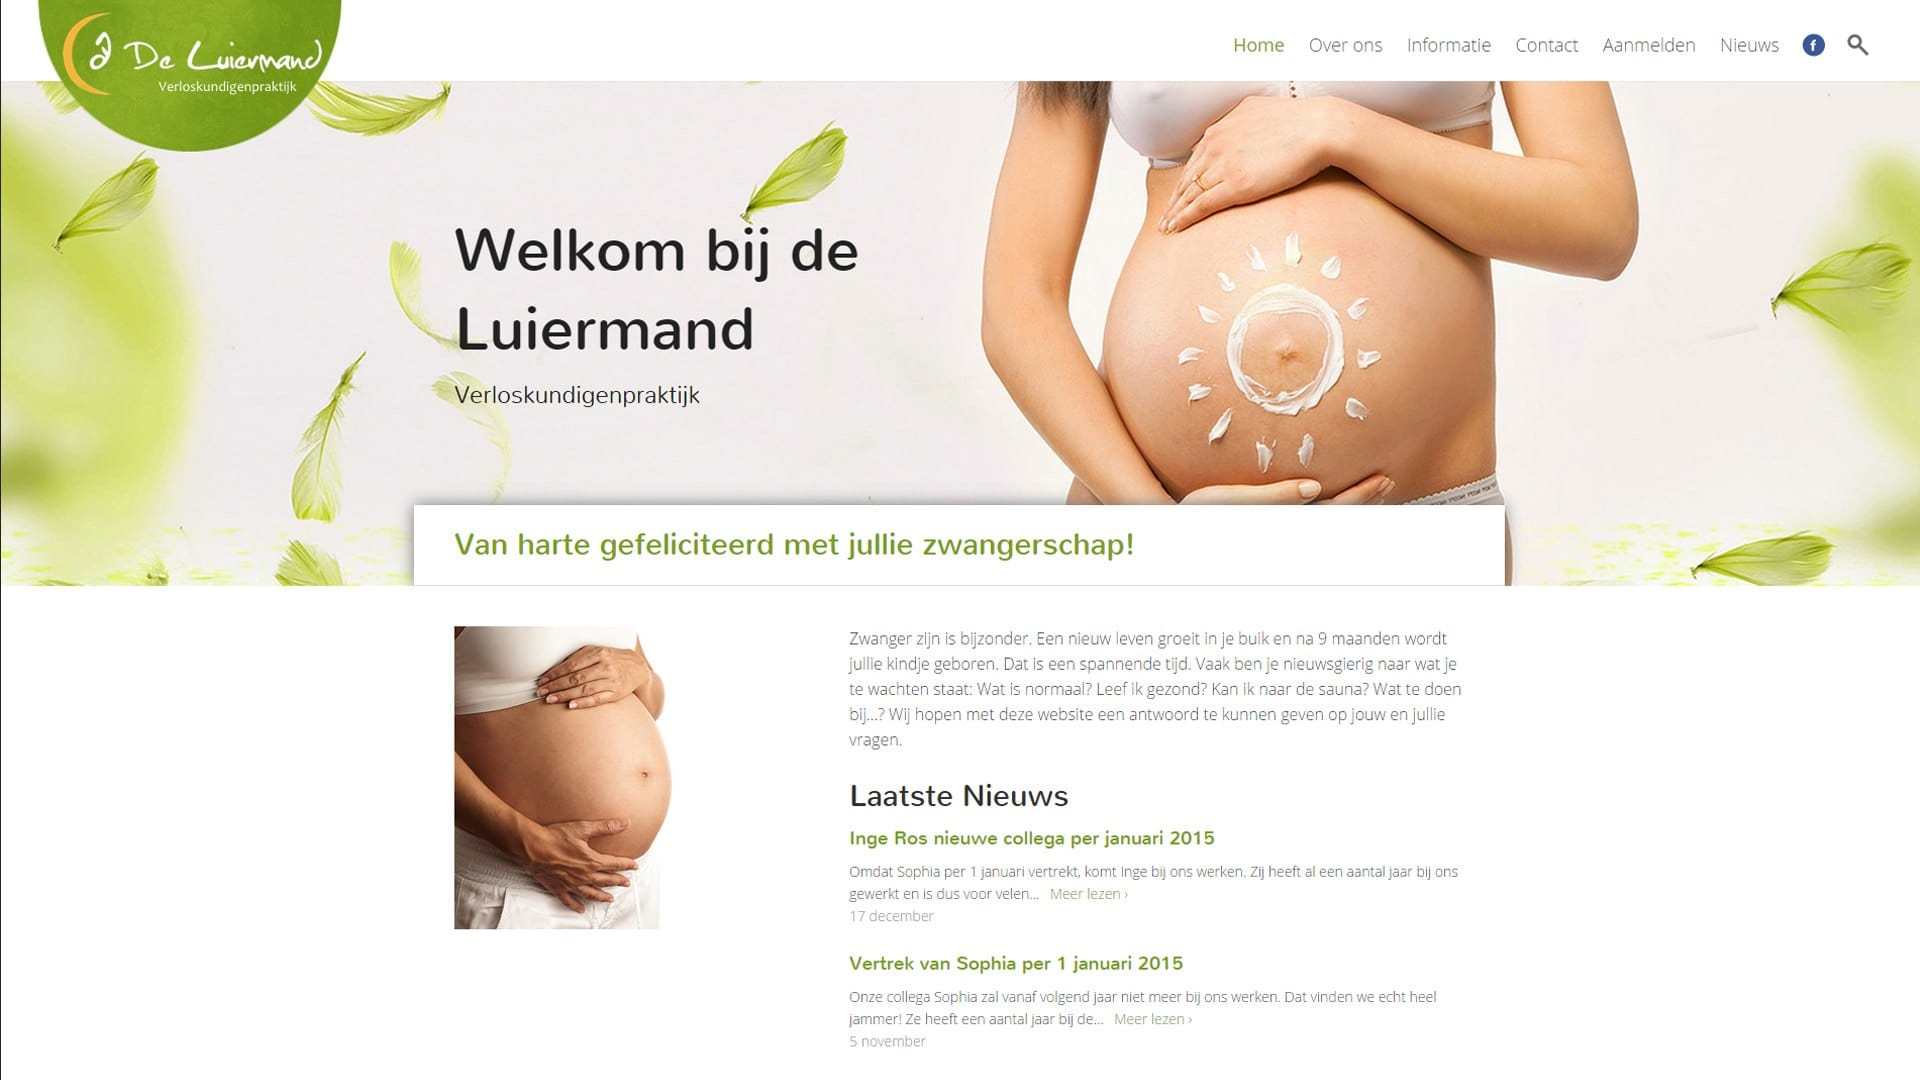 De Luiermand homepage midwifery practive website by Michiel Tramper